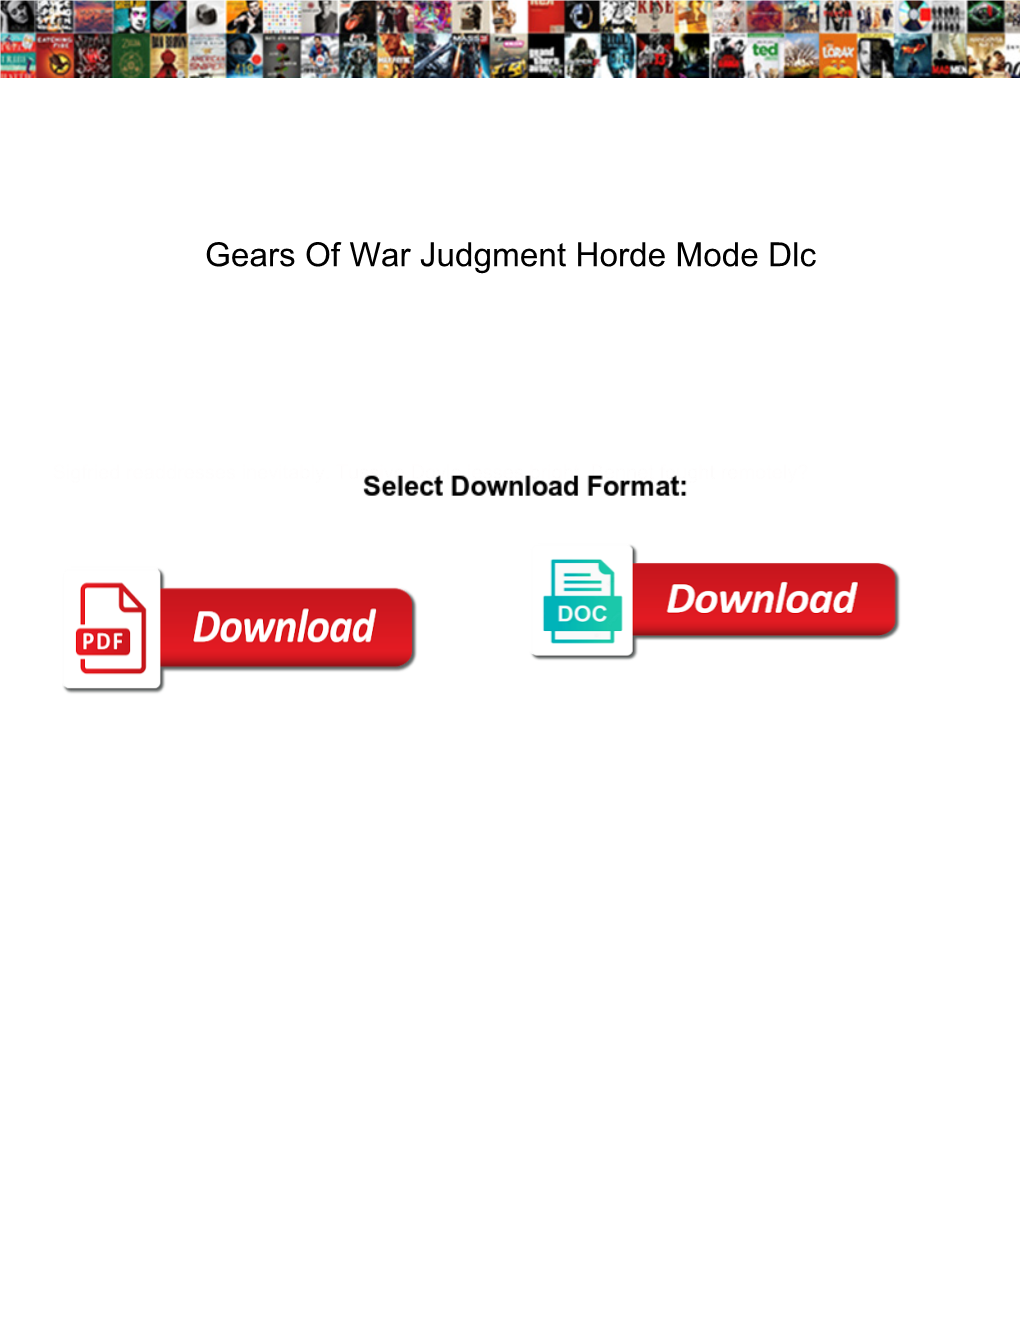 Gears of War Judgment Horde Mode Dlc